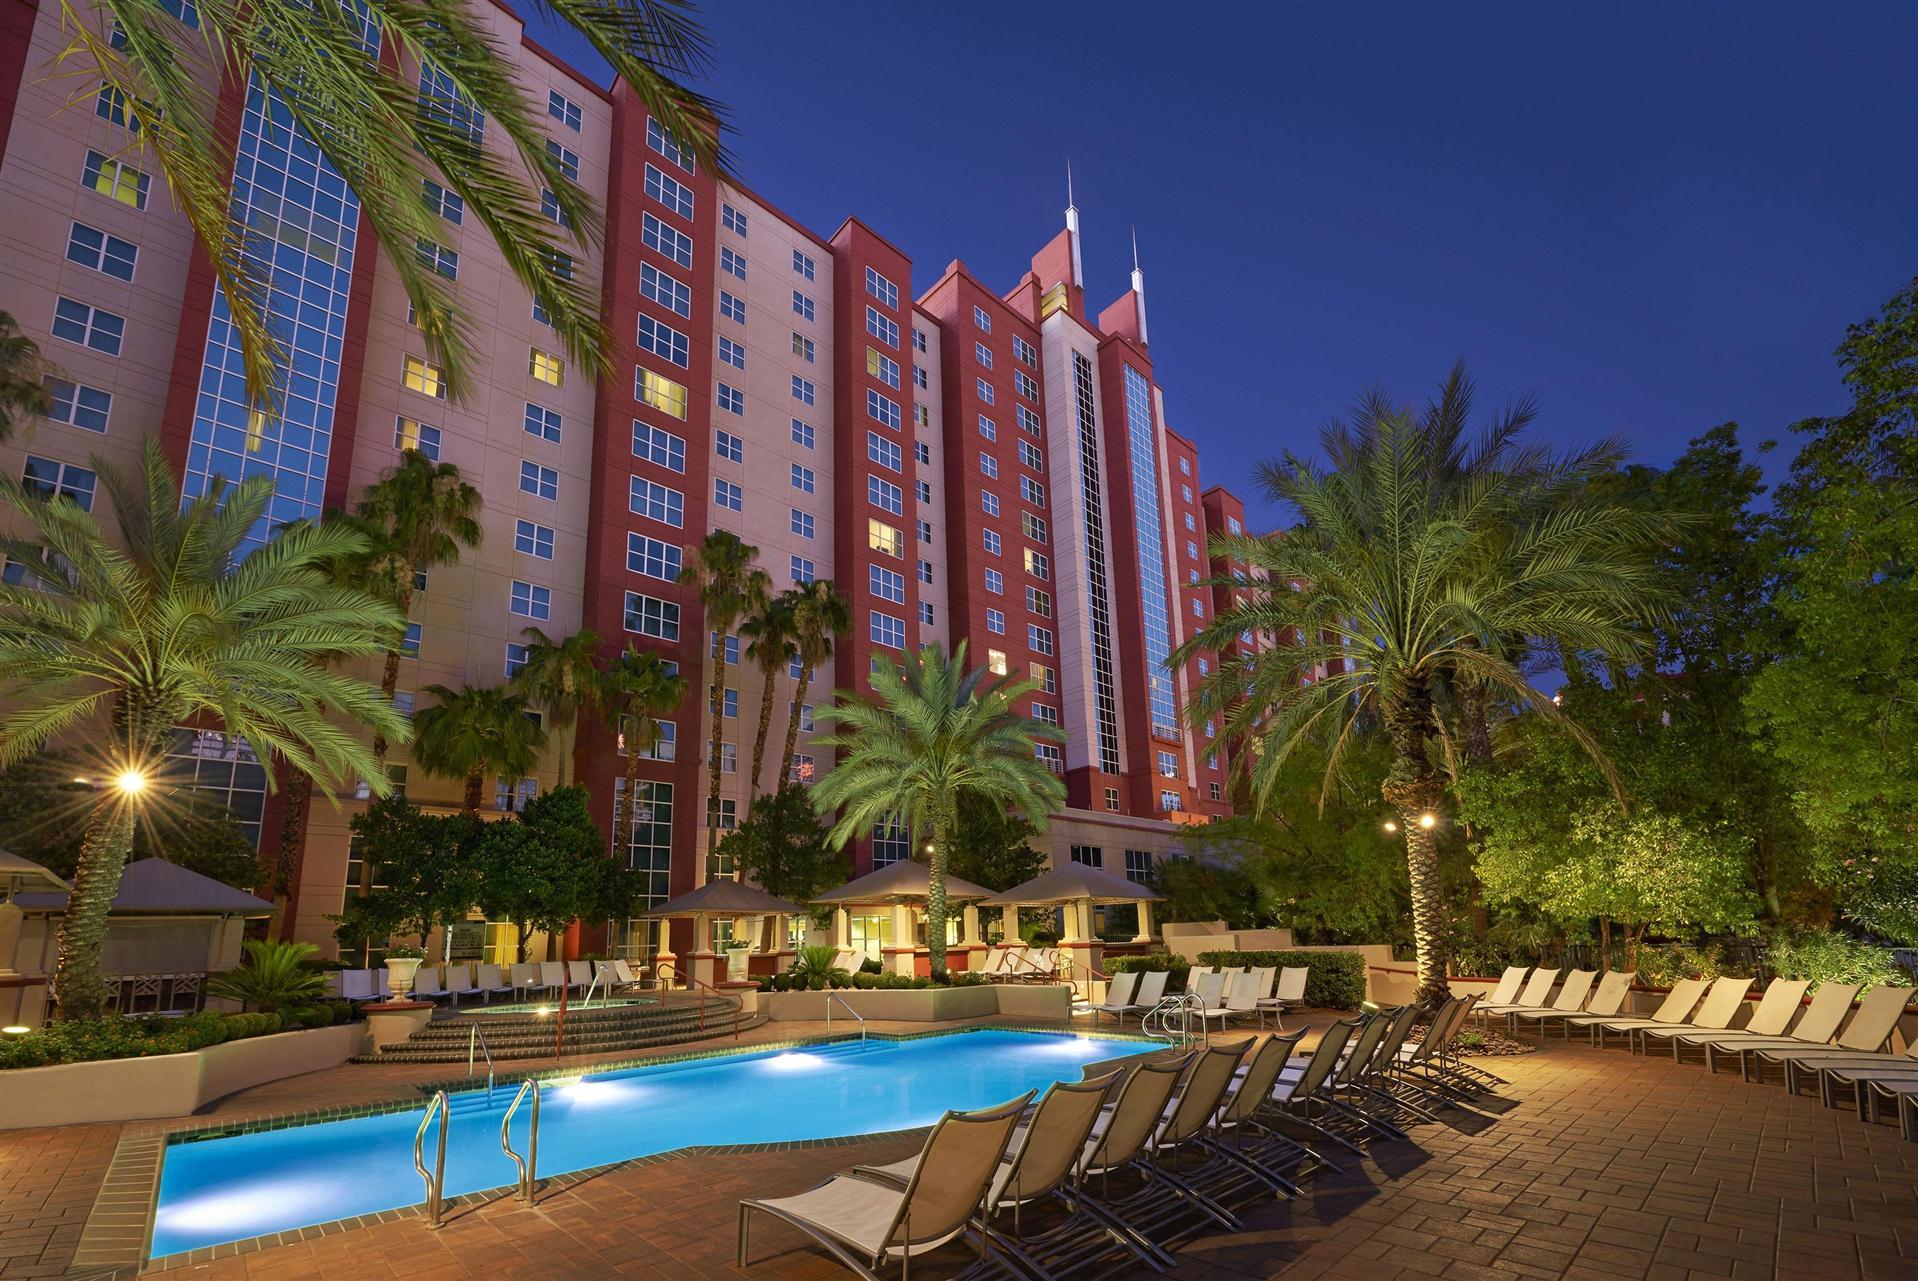 Hilton Grand Vacations Club Flamingo Las Vegas in Las Vegas, NV